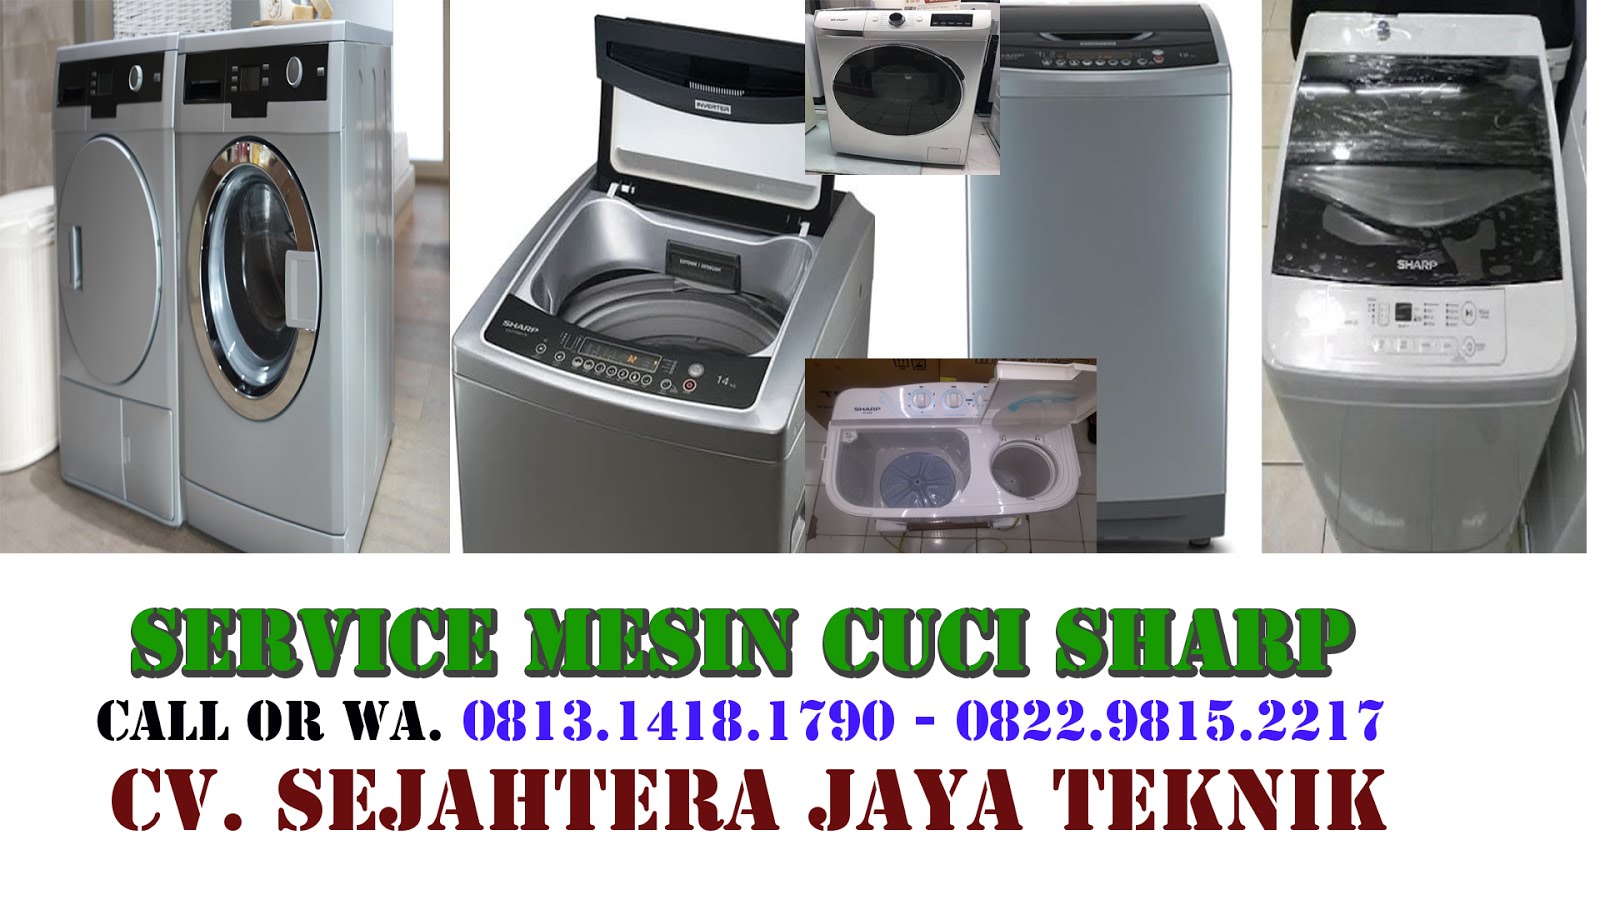 Service Mesin Cuci Sharp di Jakarta Selatan